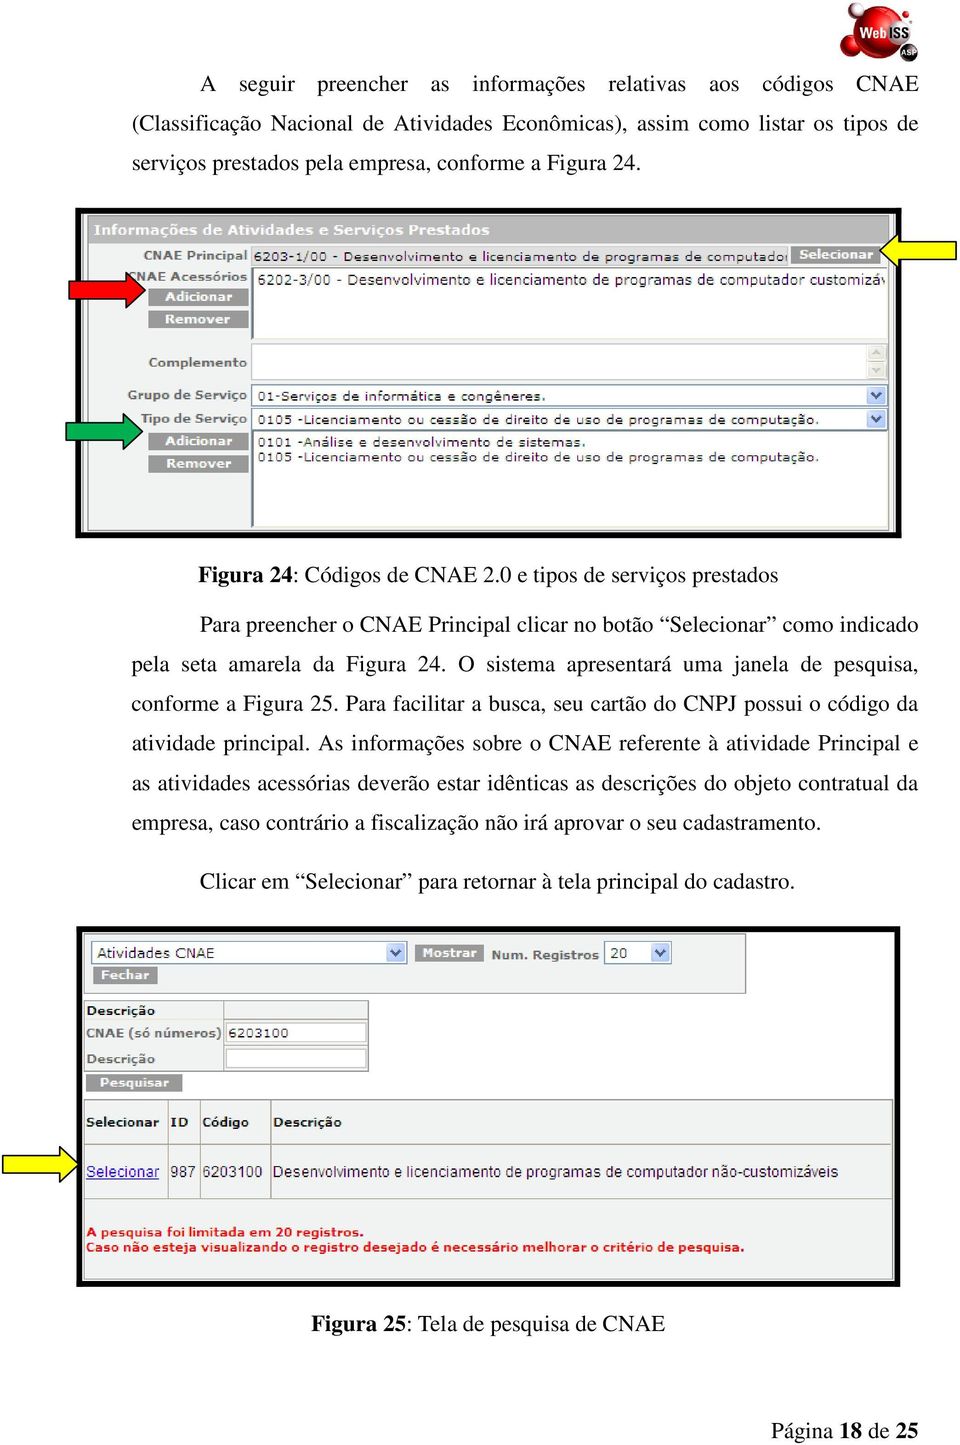 O sistema apresentará uma janela de pesquisa, conforme a Figura 25. Para facilitar a busca, seu cartão do CNPJ possui o código da atividade principal.